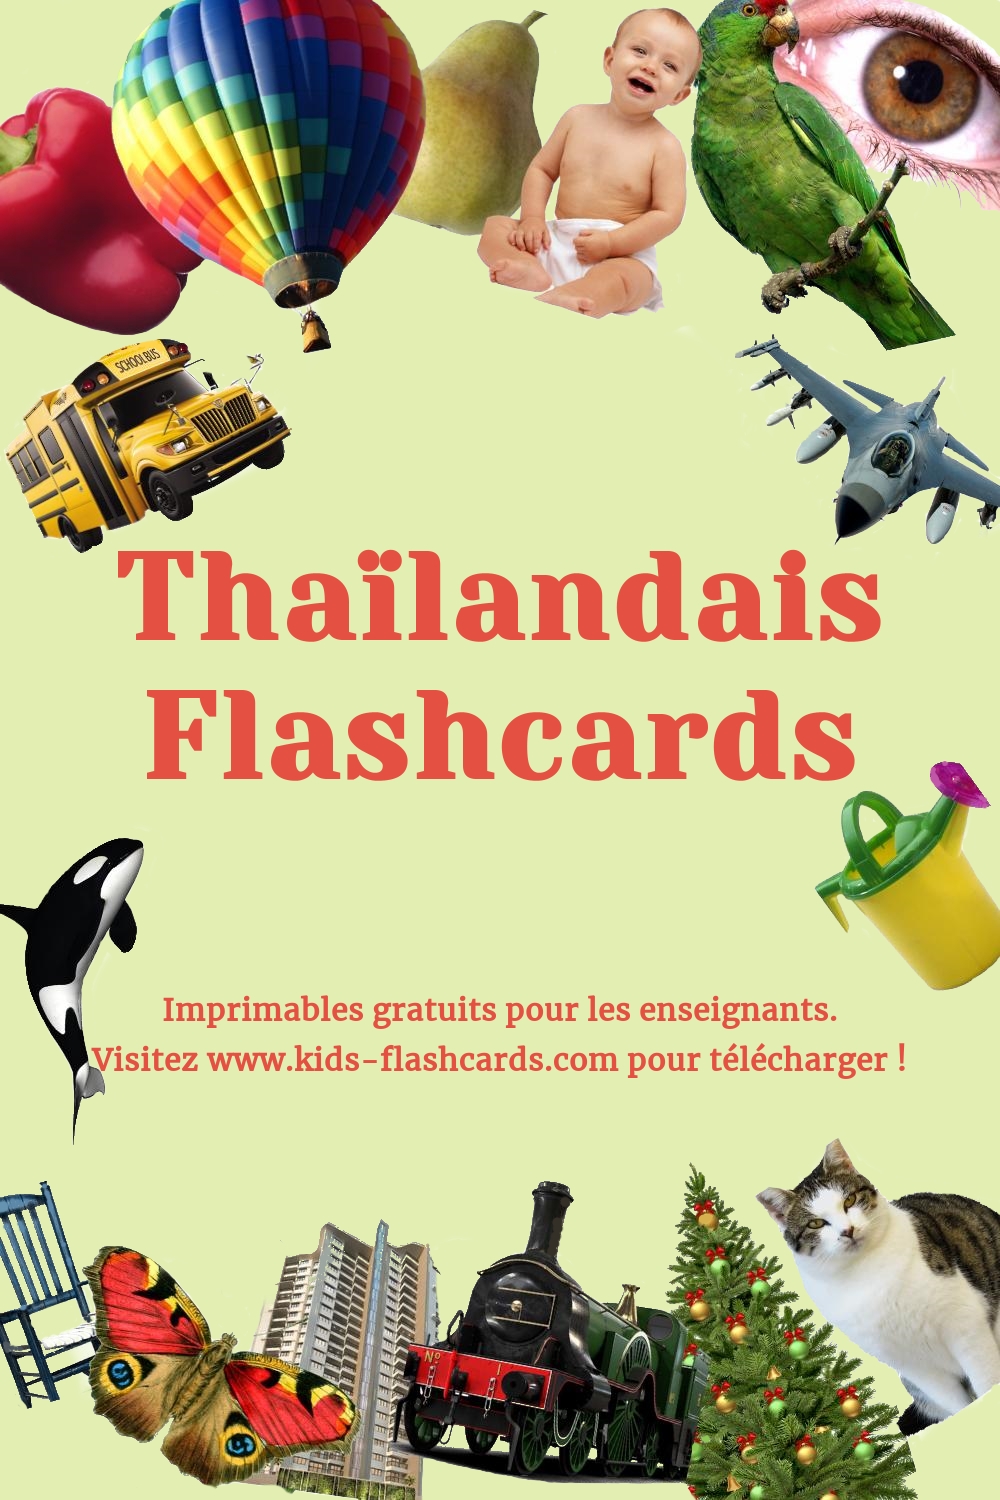 Imprimables gratuits en Thaïlandais